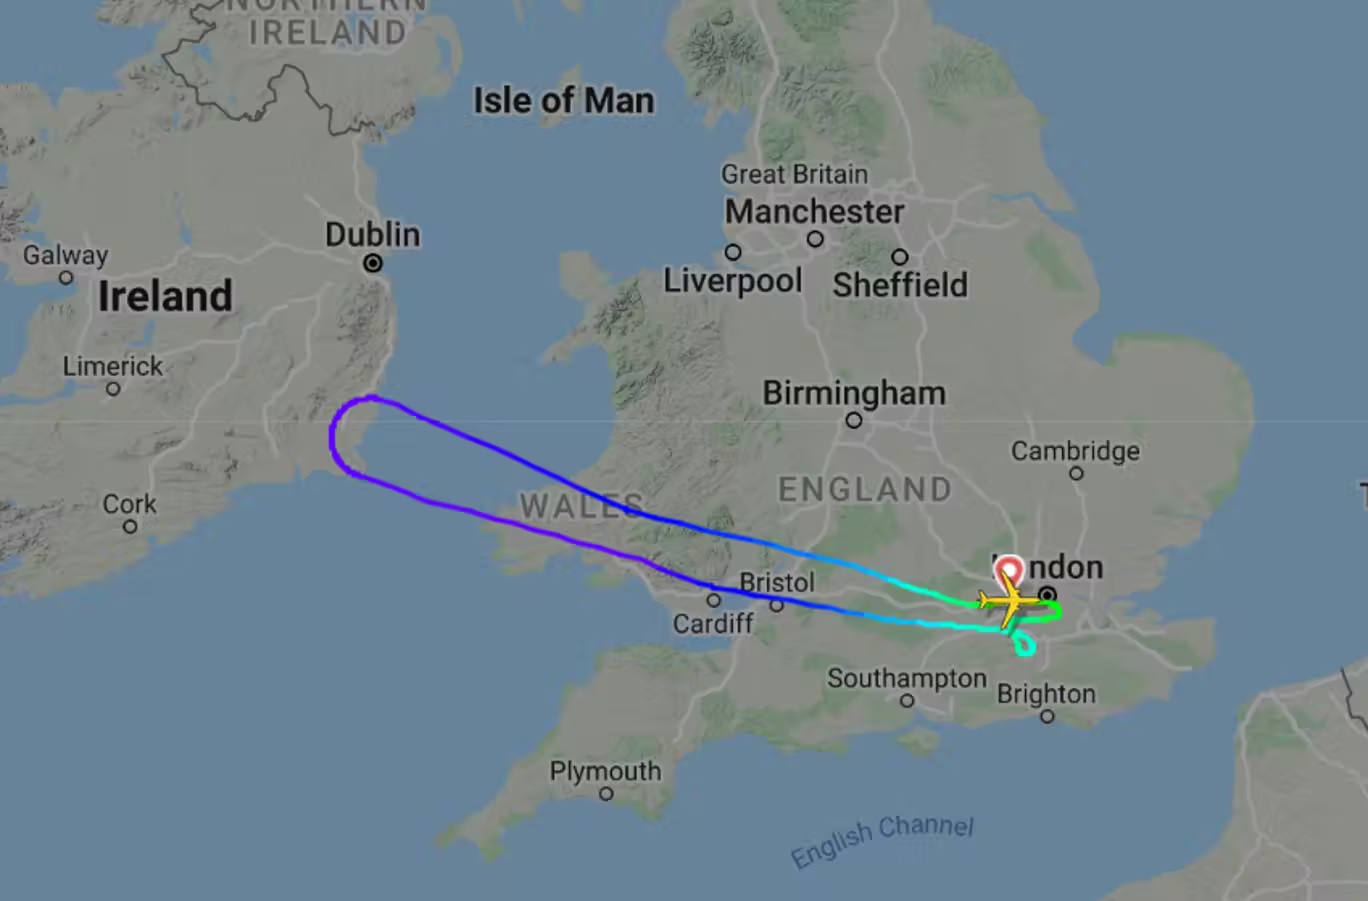 وصلت الطائرة لفوق الساحل الإيرلندي قبل إدراك حقيقة الوضع (فلايت رادار 24)